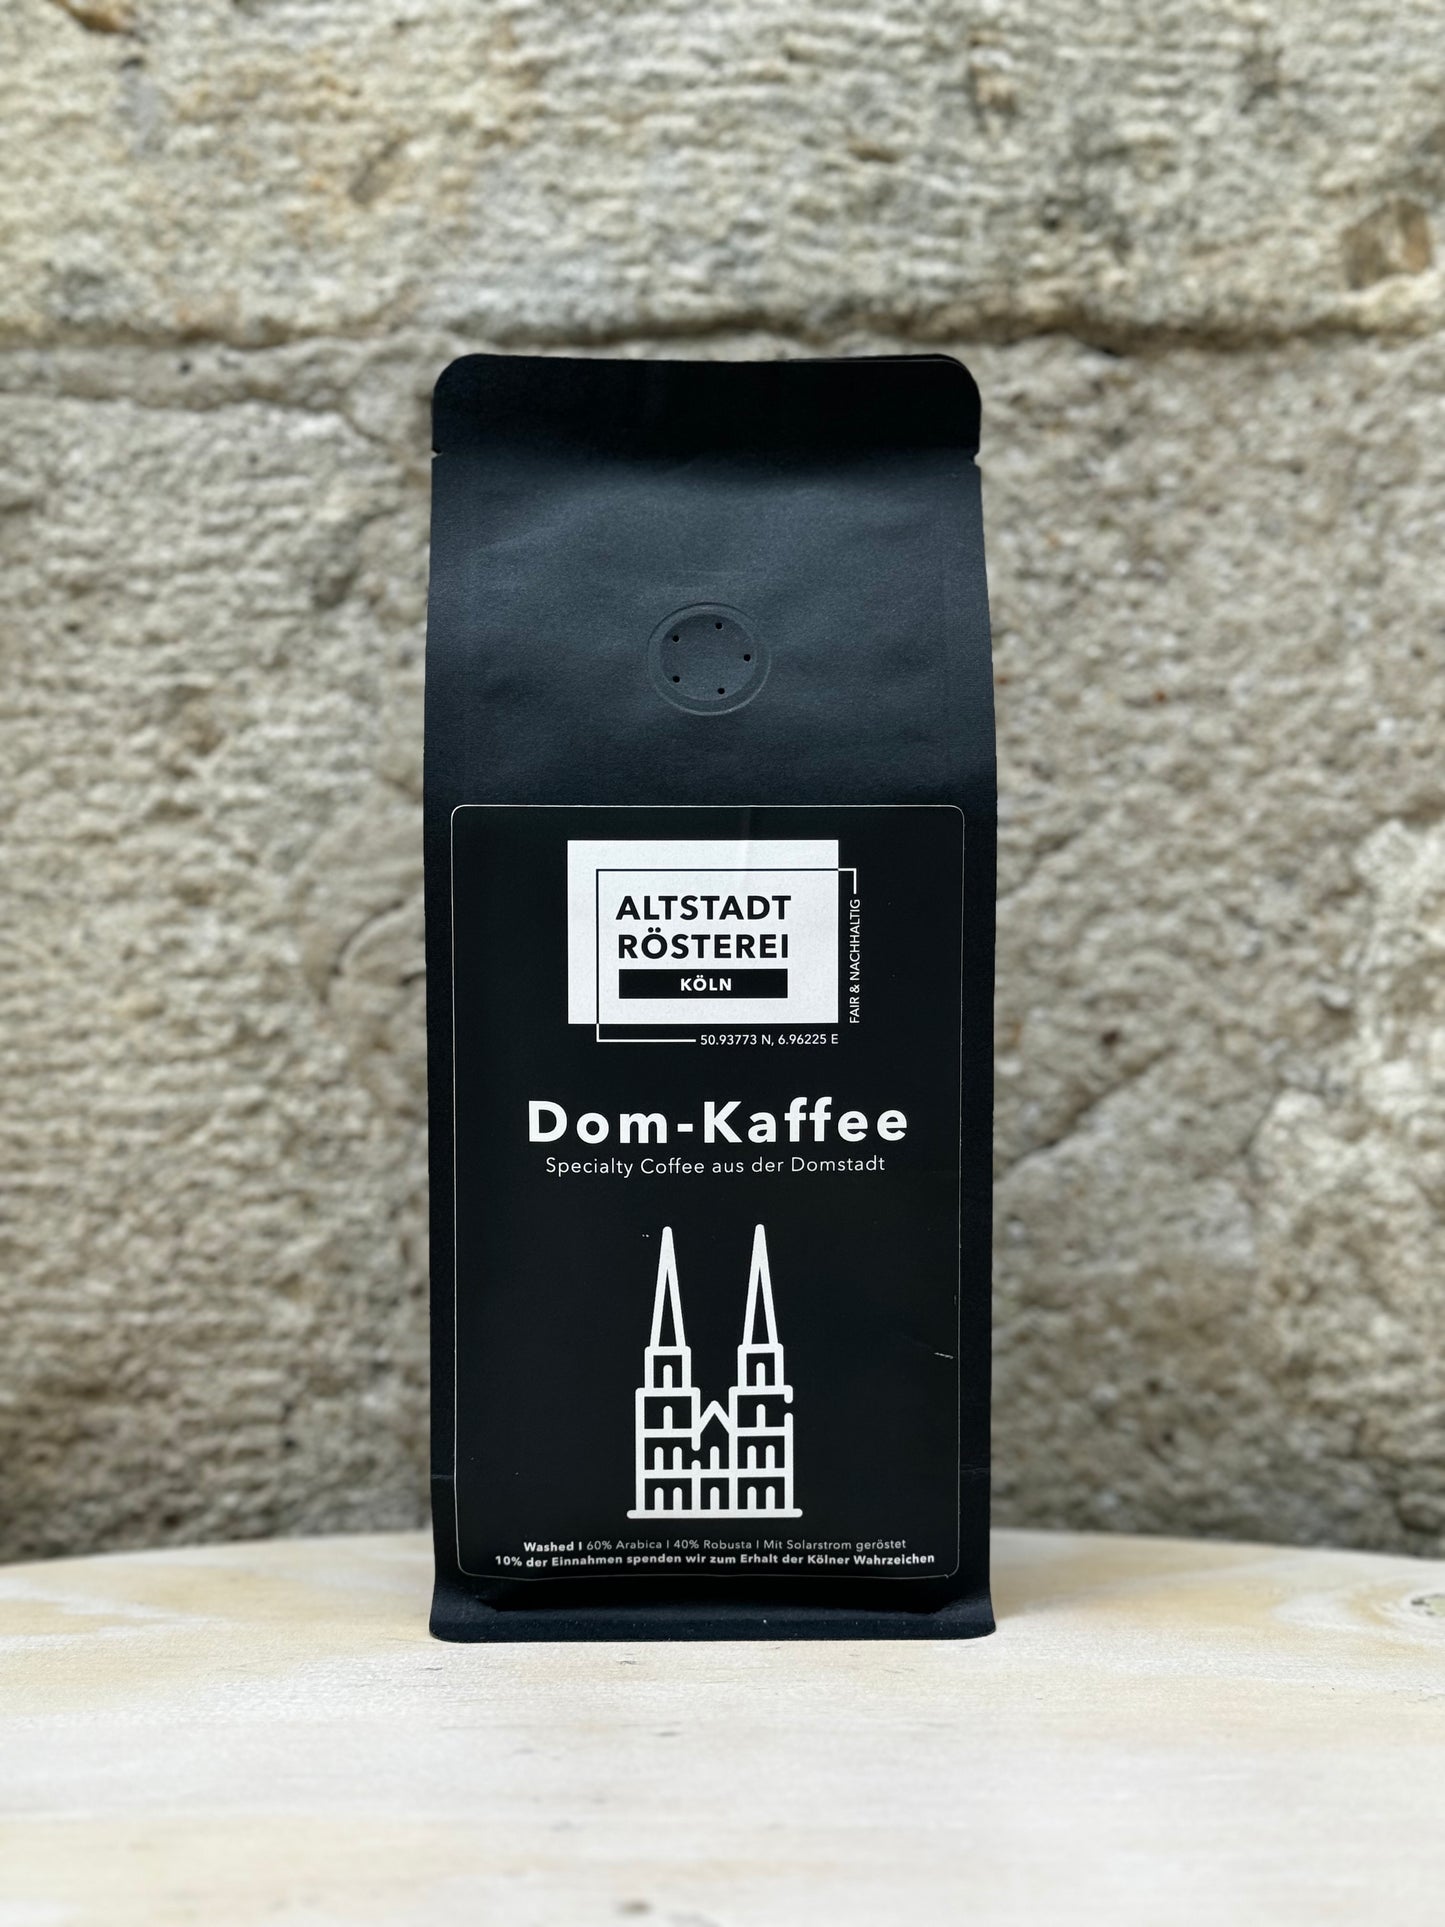 Eine Packung Altstadt Rösterei Dom-Kaffee vor einer Steinwand, mit der Aufschrift "Specialty Coffee aus der Domstadt" und einer Abbildung des Kölner Doms.